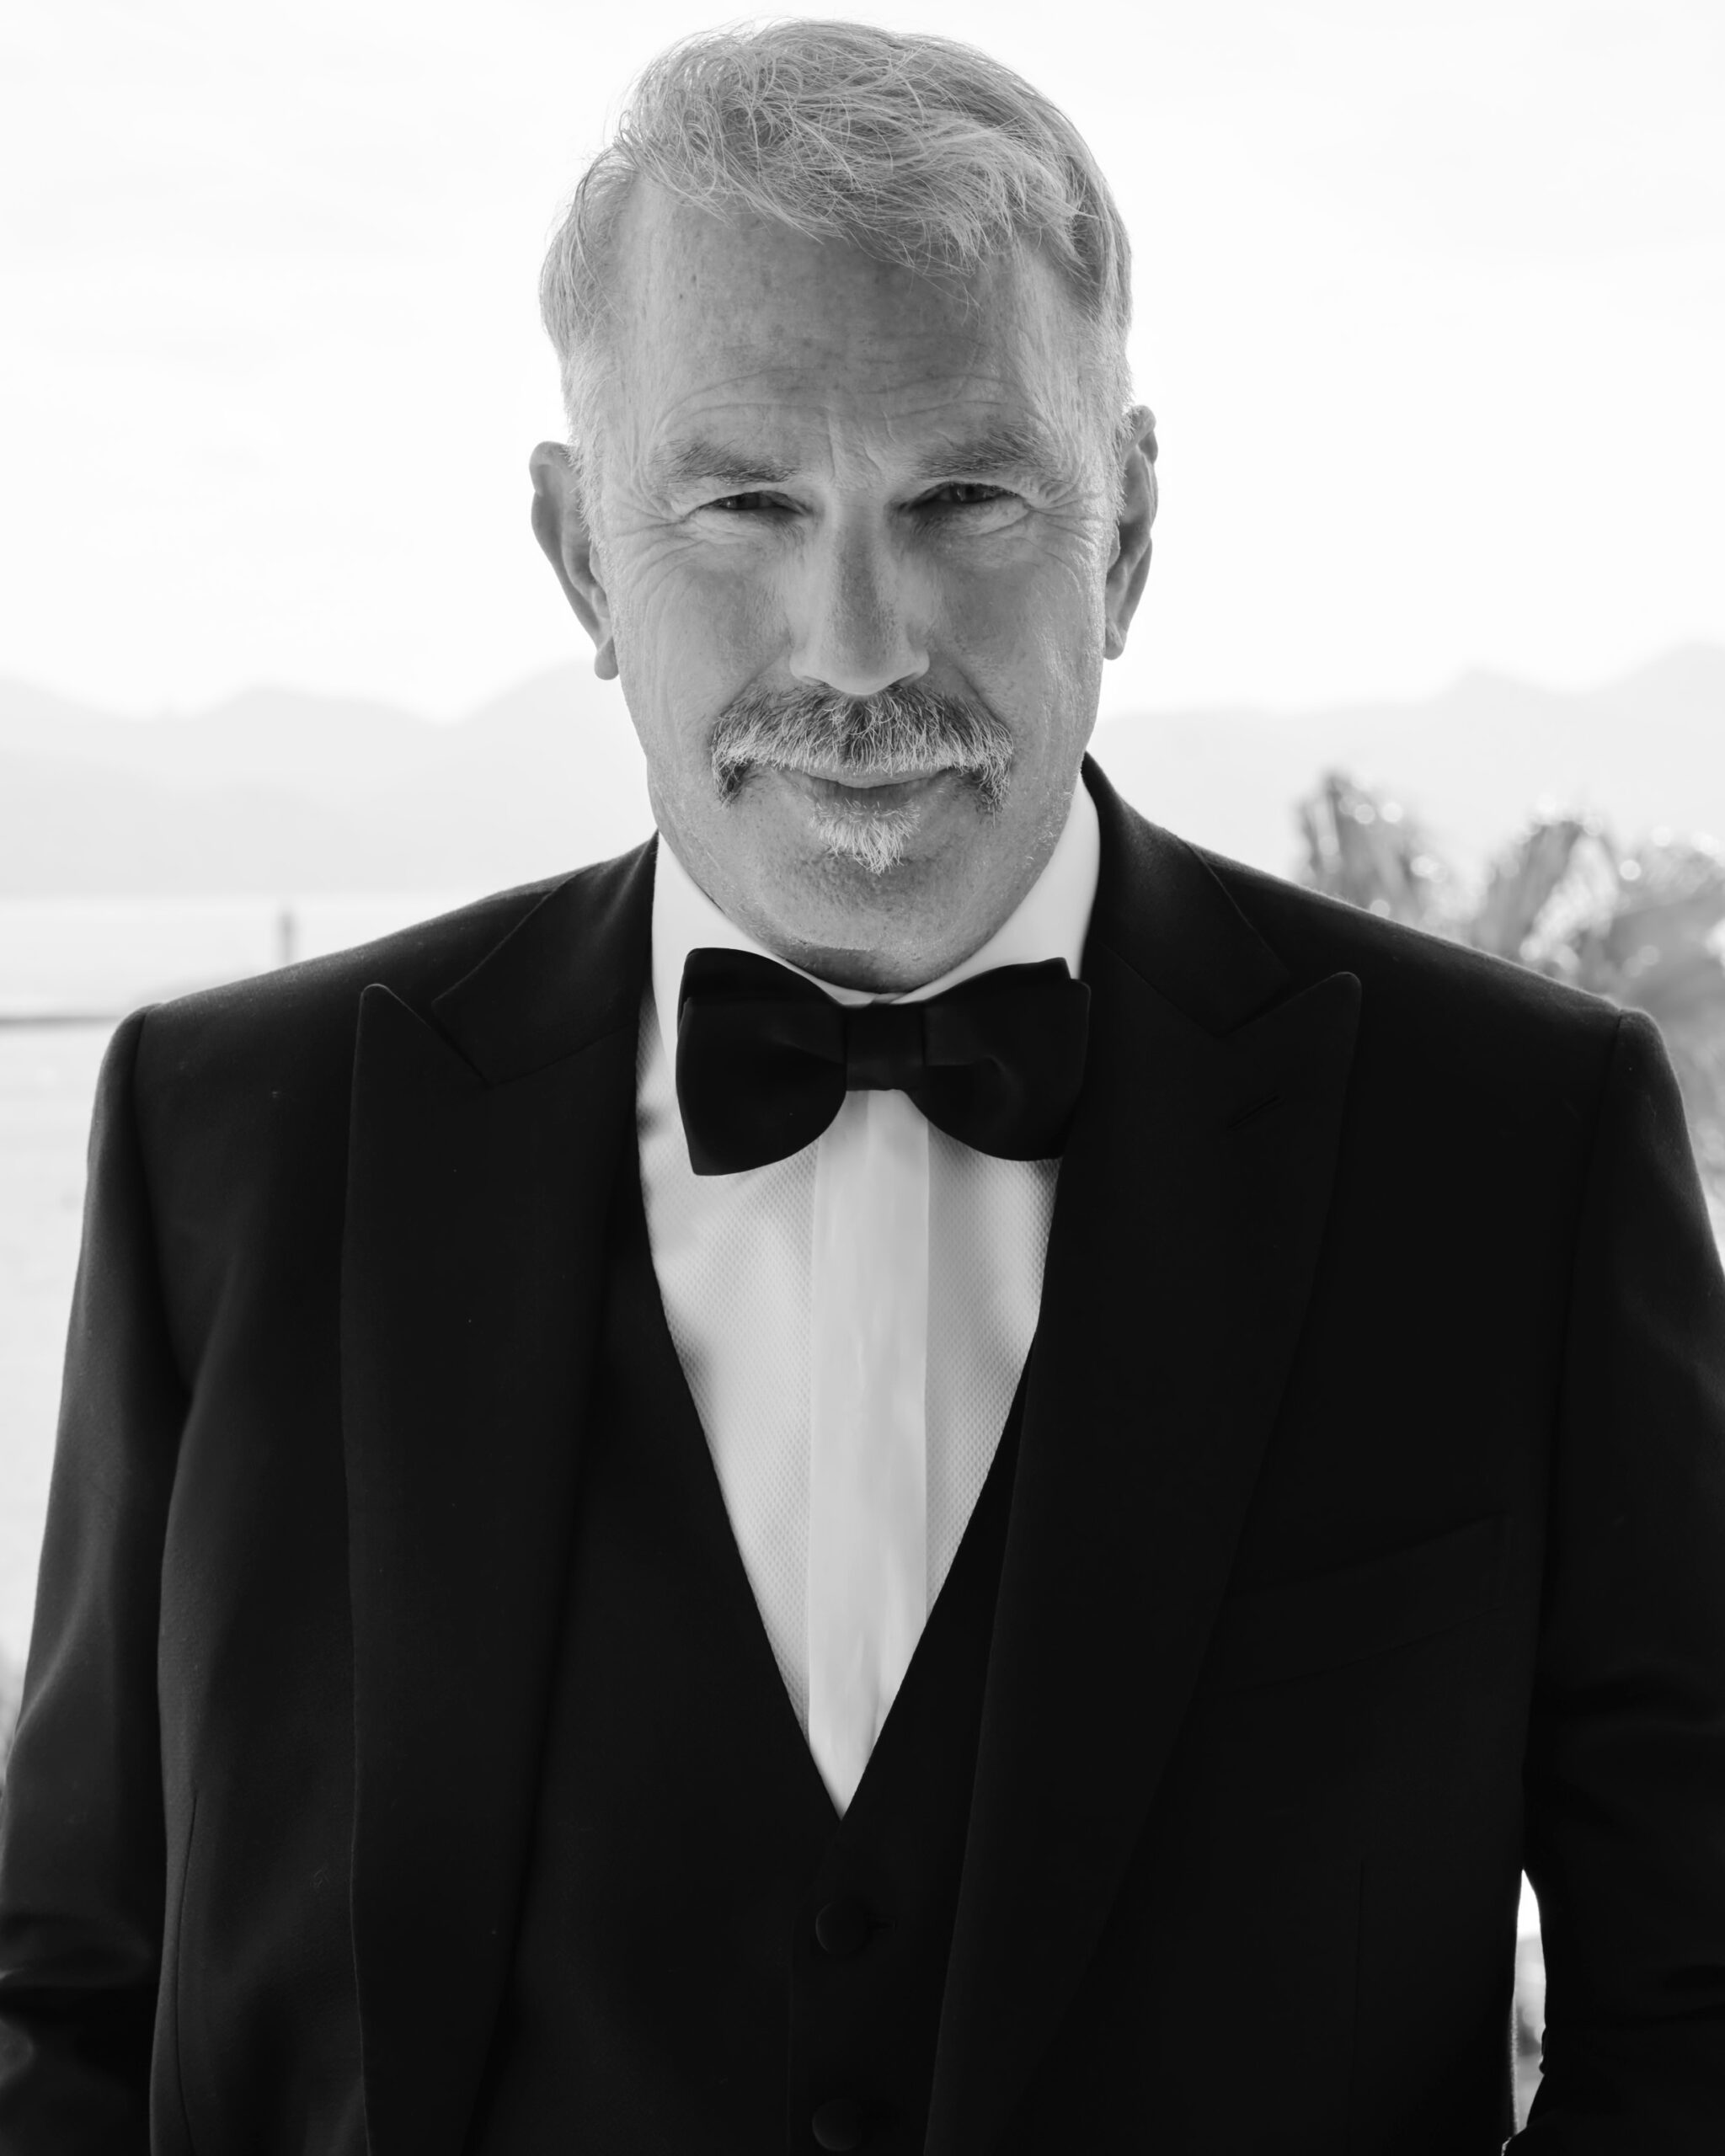 Kevin Costner premiato con la Colonna d’Oro alla Carriera al Magna Graecia Film Festival.